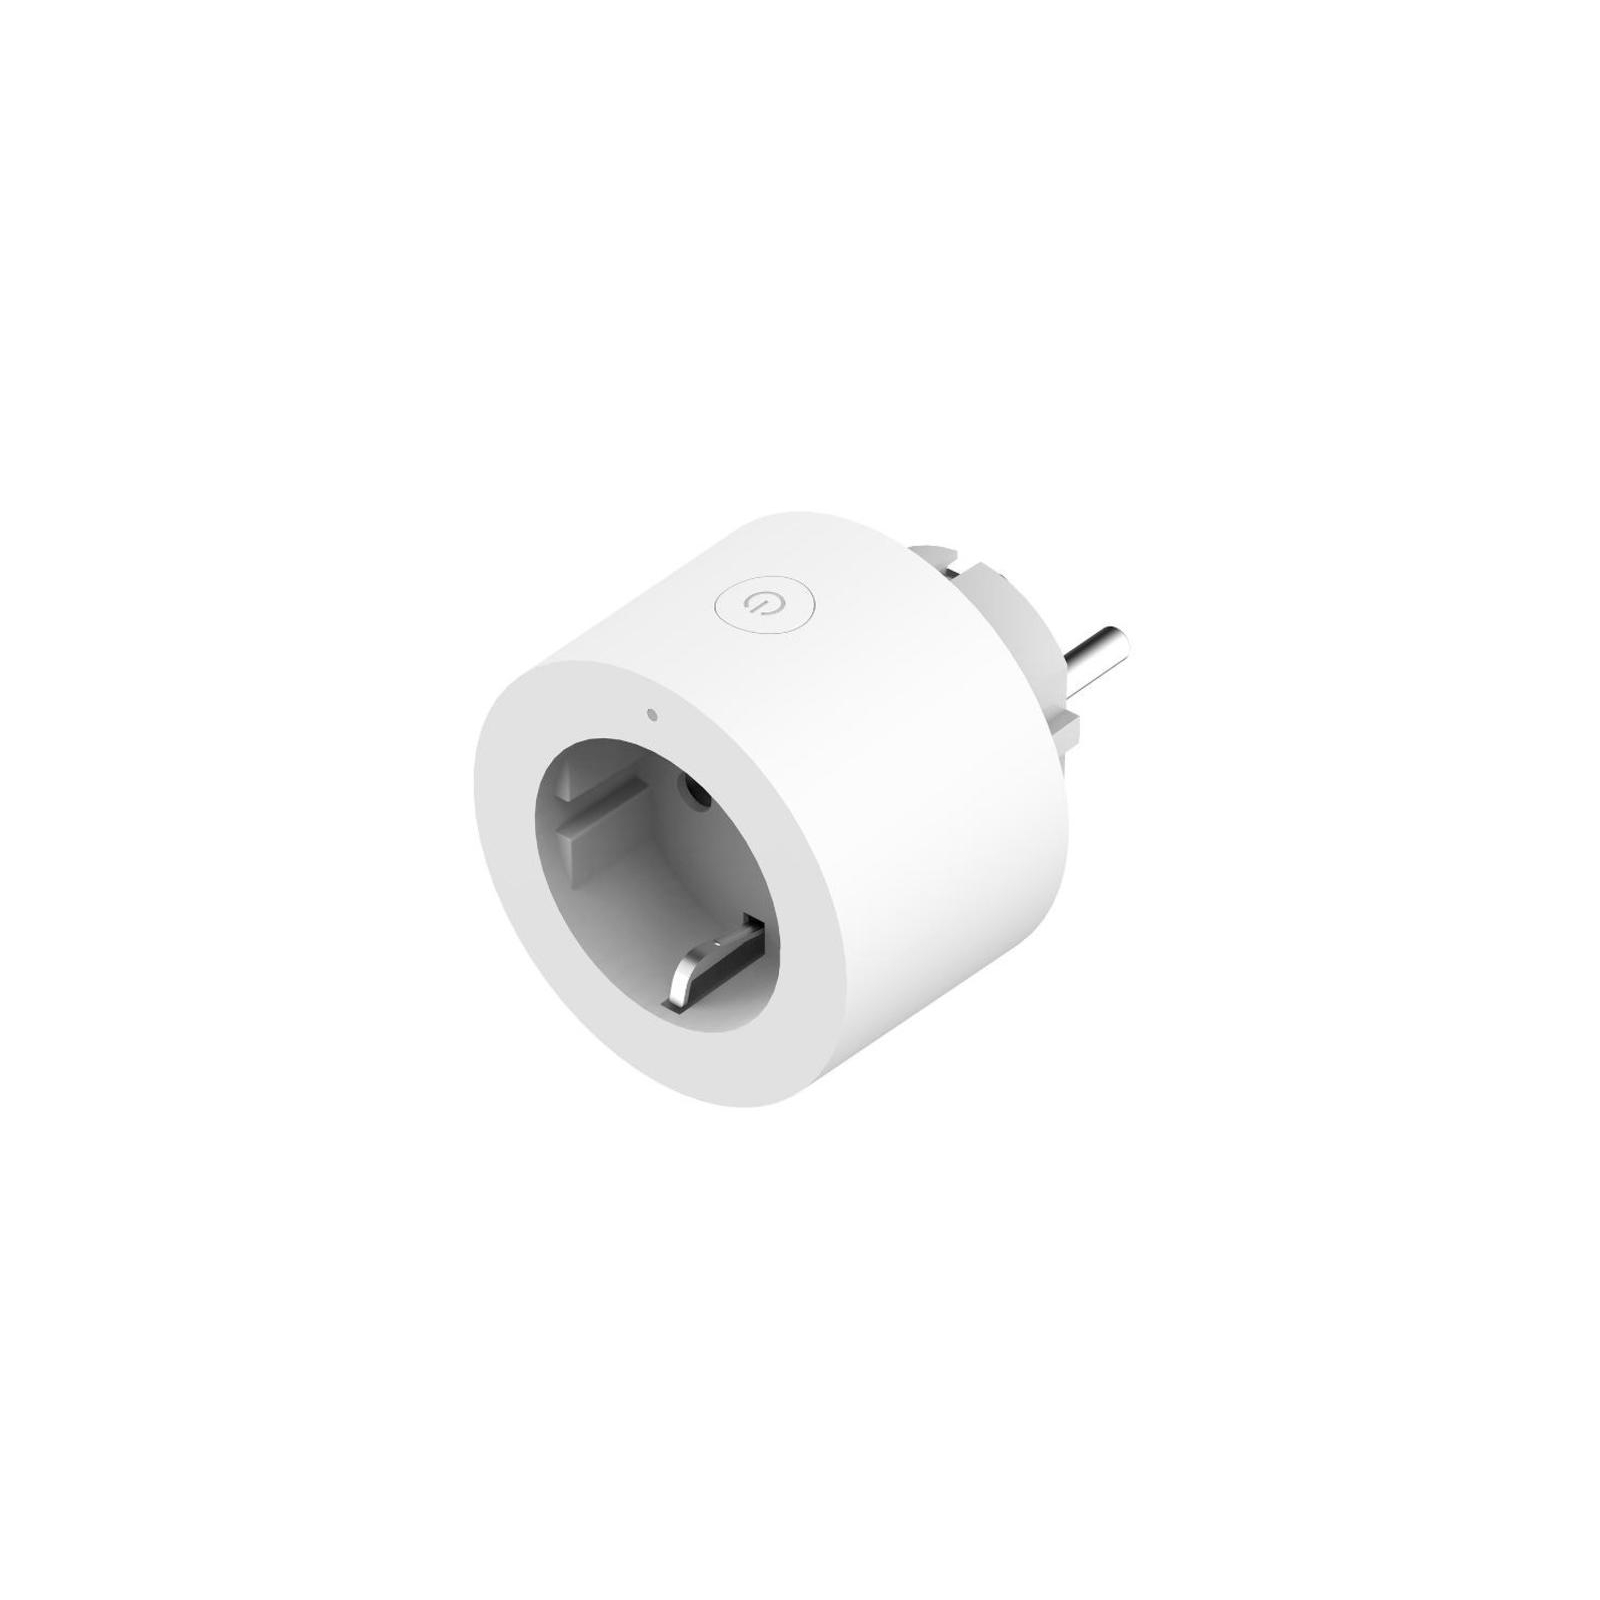 Умная розетка Aqara Smart Plug (SP-EUC01) изображение 2